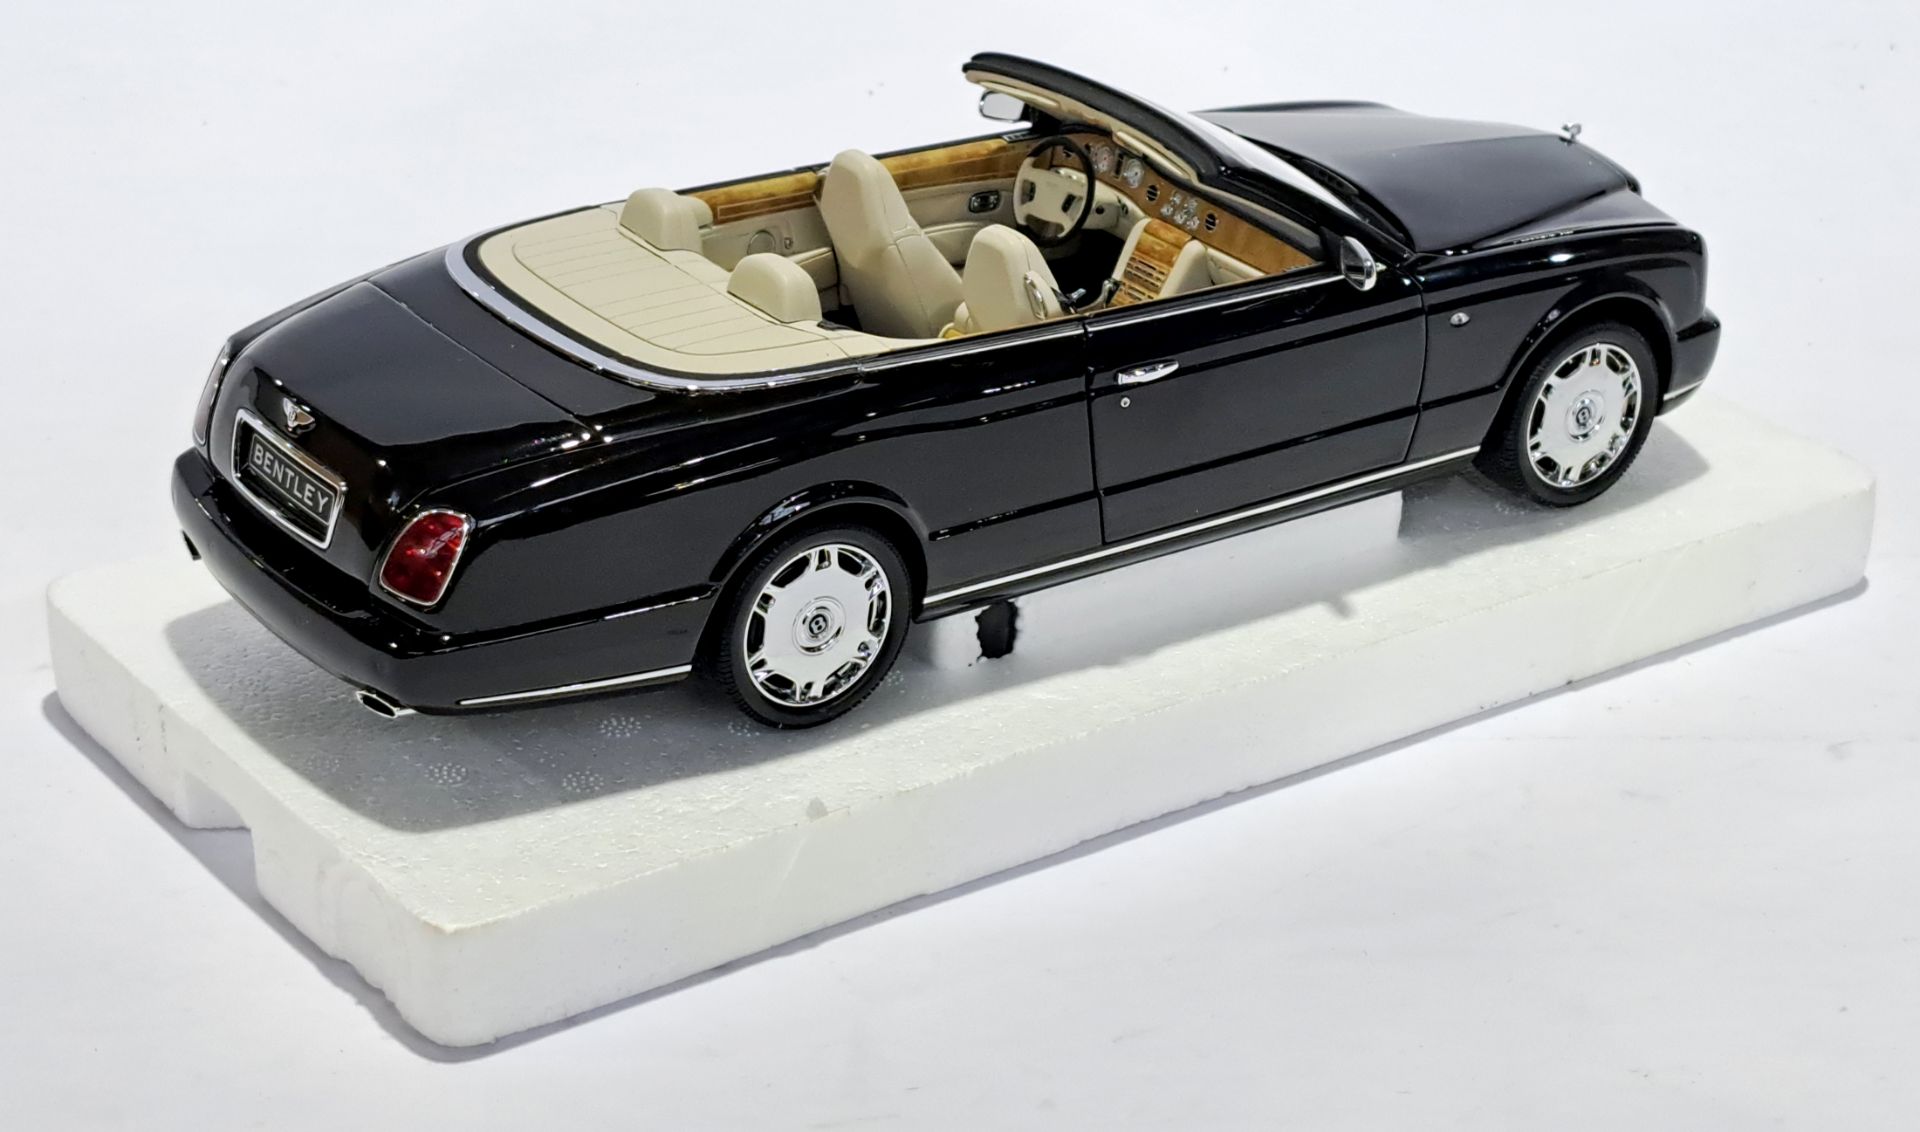 Minichamps (Paul's Model Art) 1:18 scale 139500 Bentley Azure 2006 - Bild 3 aus 3